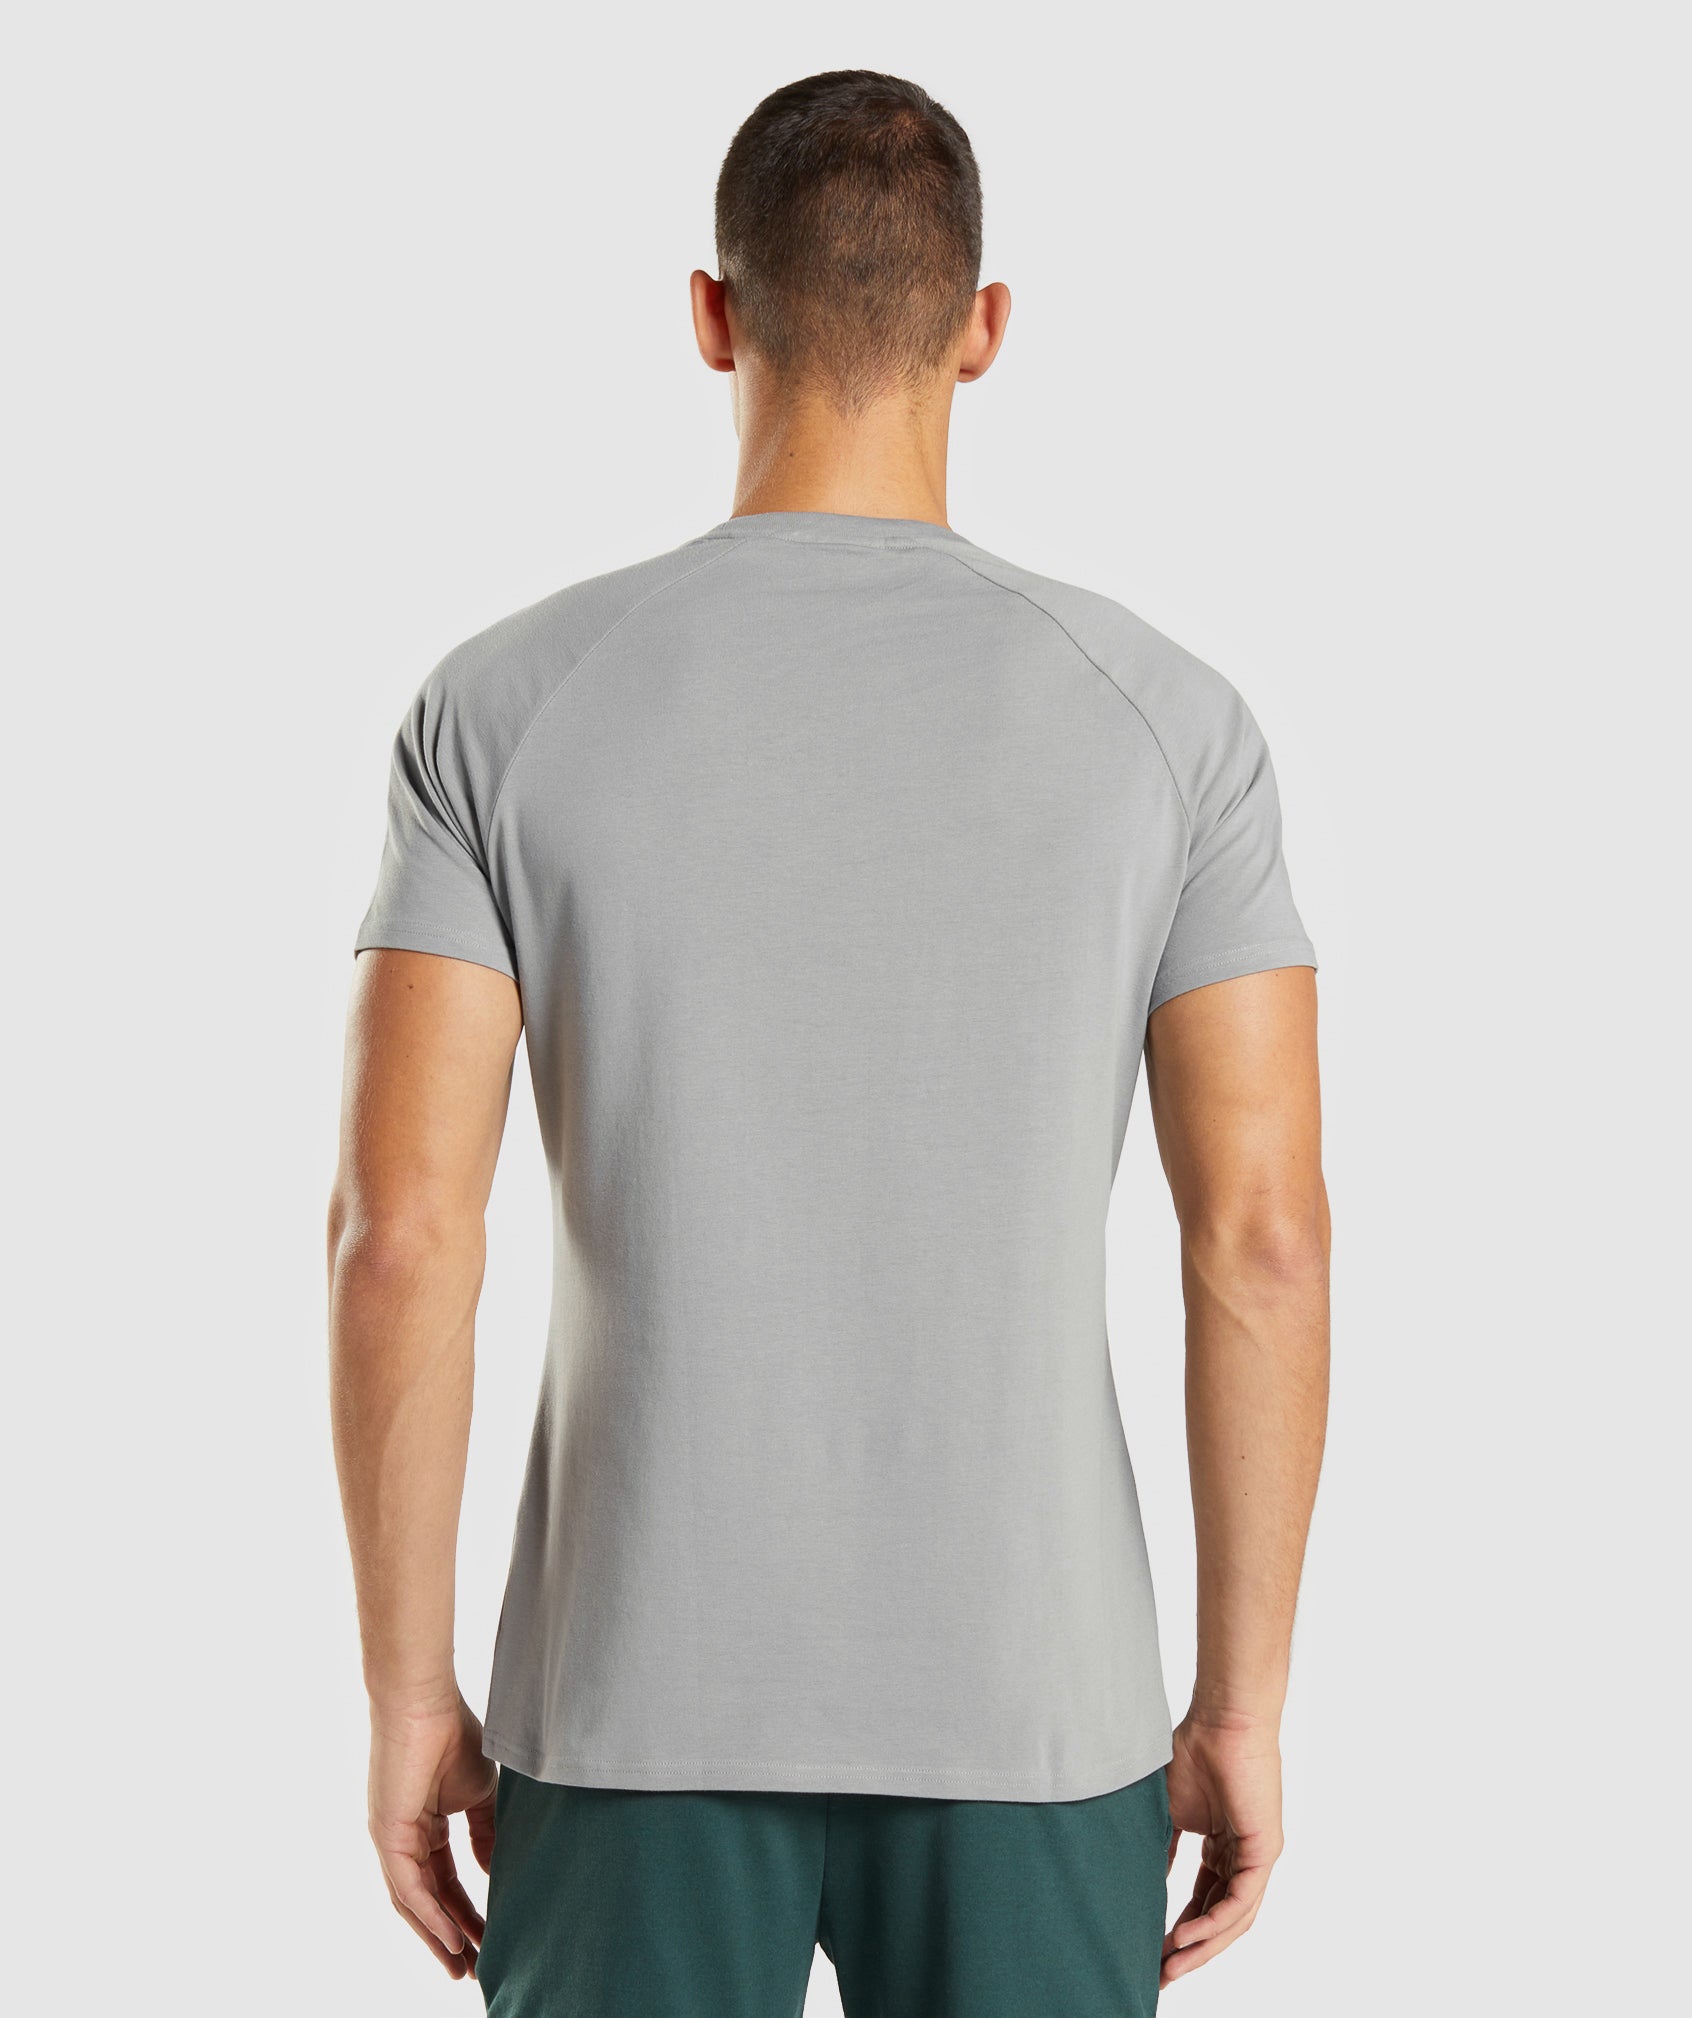 Apollo T-Shirt in Smokey Grey - view 3